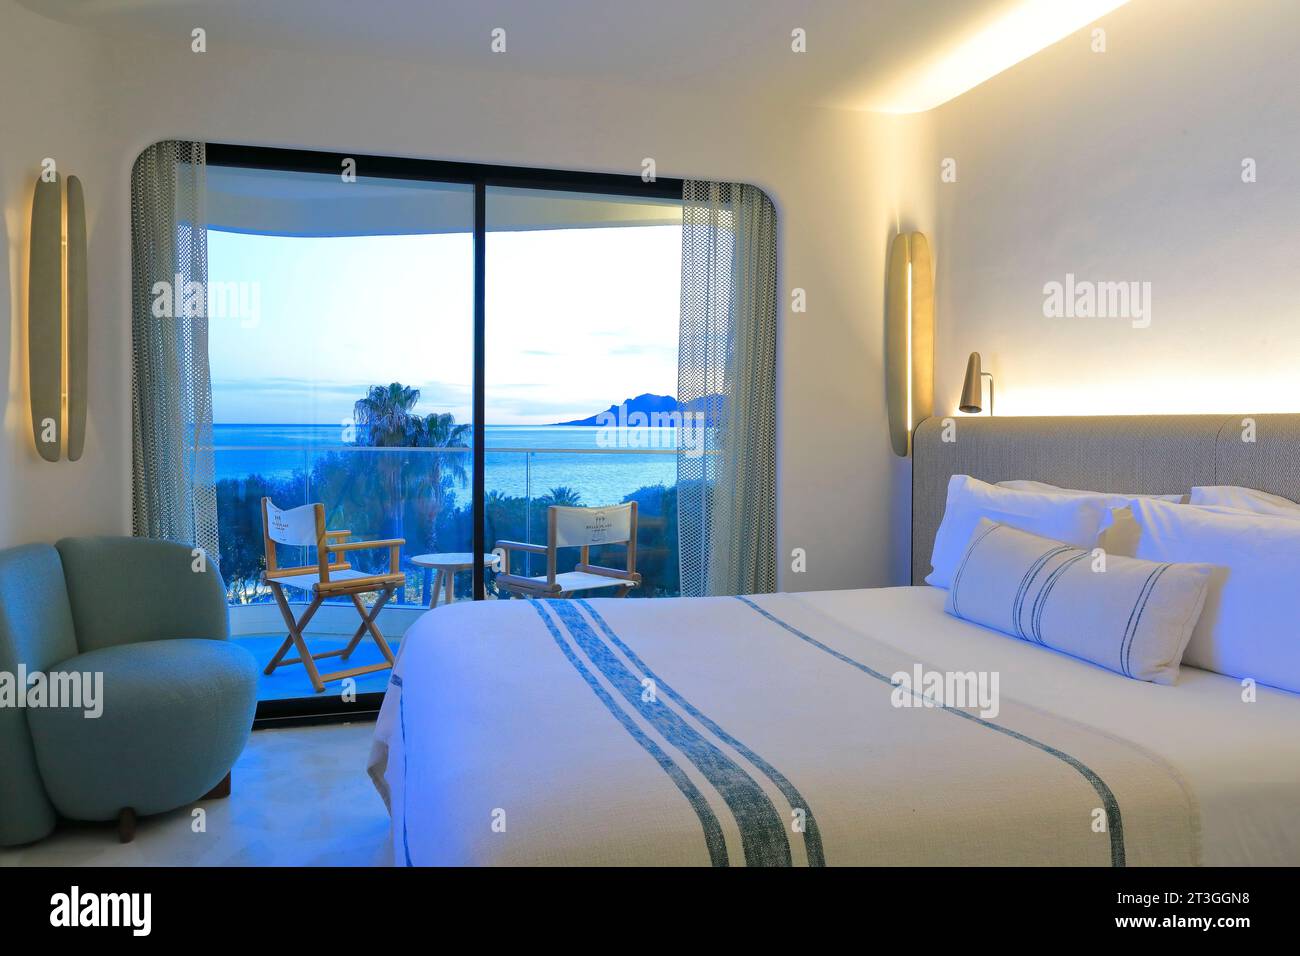 Francia, Alpes Maritimes, Cannes, Hotel Belle Plage decorato dal designer d'interni Raphael Navot, camera con vista mare al calar della notte Foto Stock